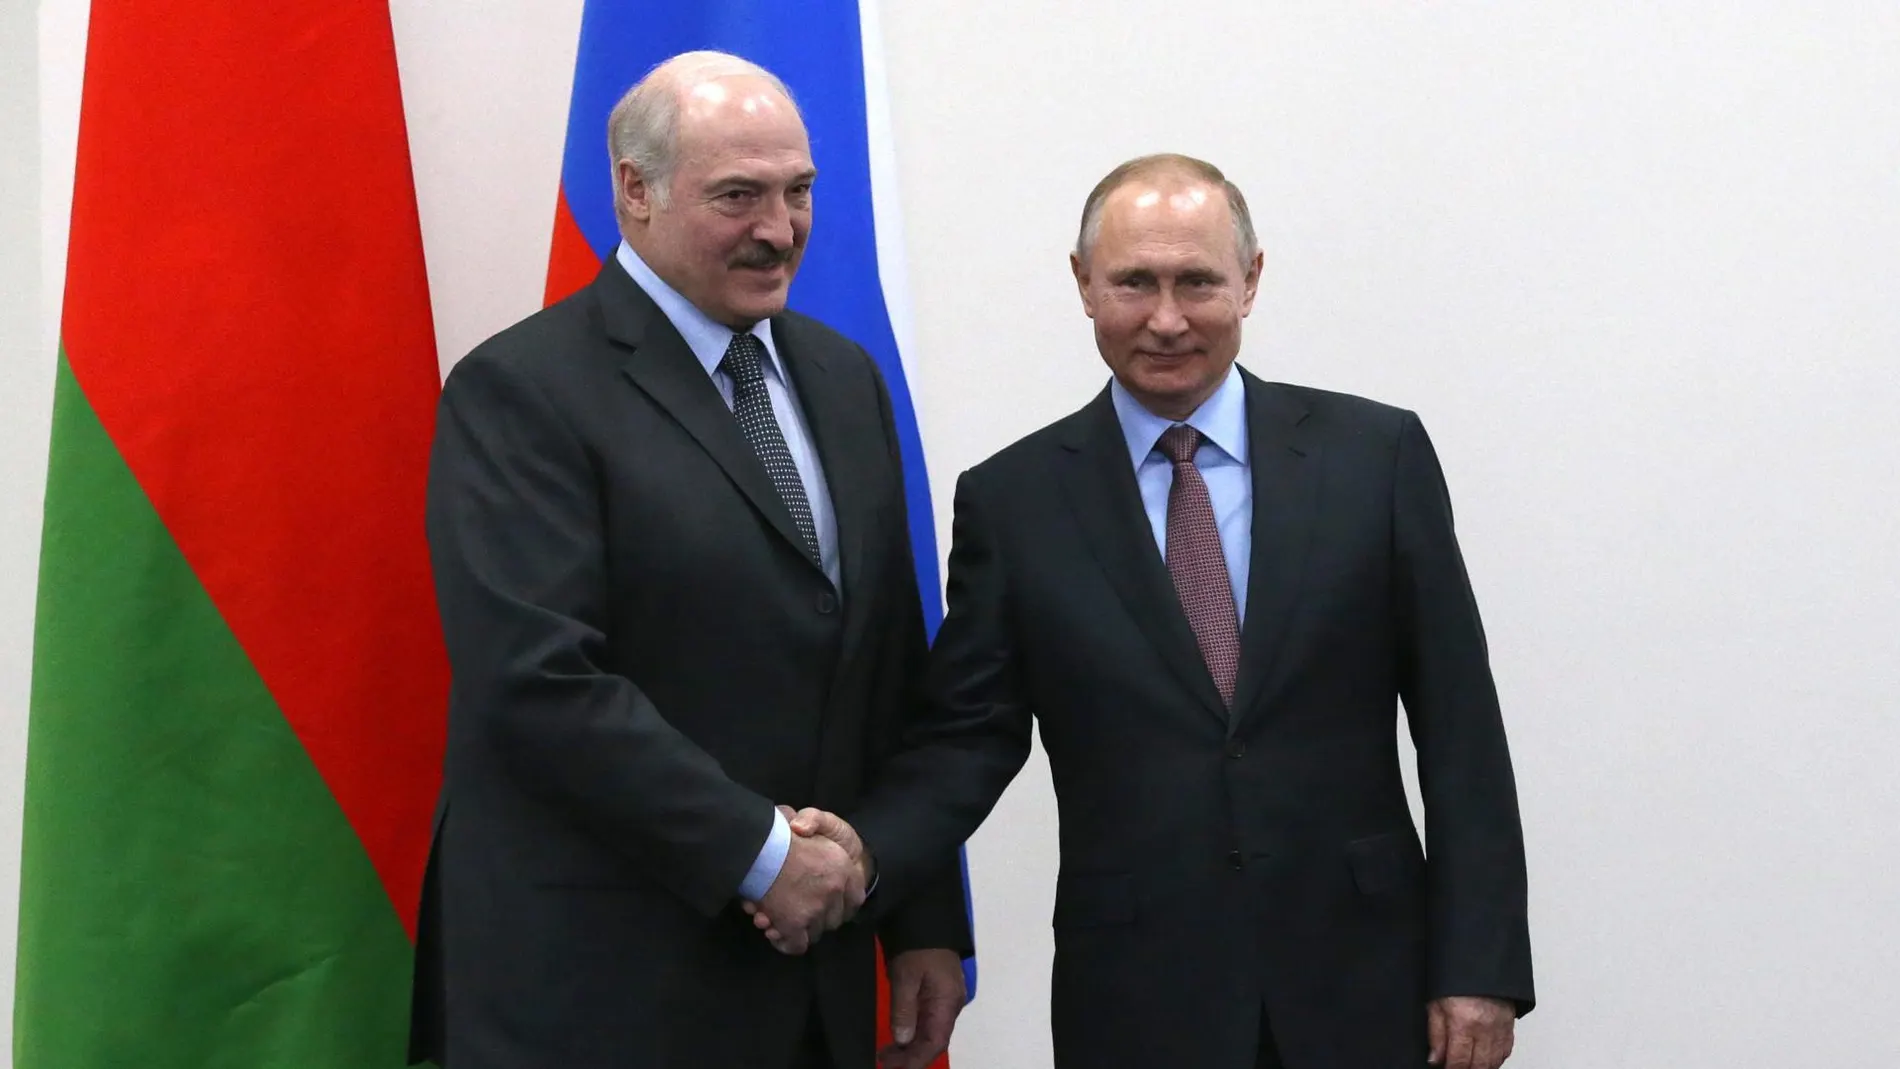 Fotografía de archivo, tomada en diciembre de 2019, en la que se registró a los presidentes de Rusia, Vladímir Putin, y de Bielorrusia, Alexandr Lukashenko.